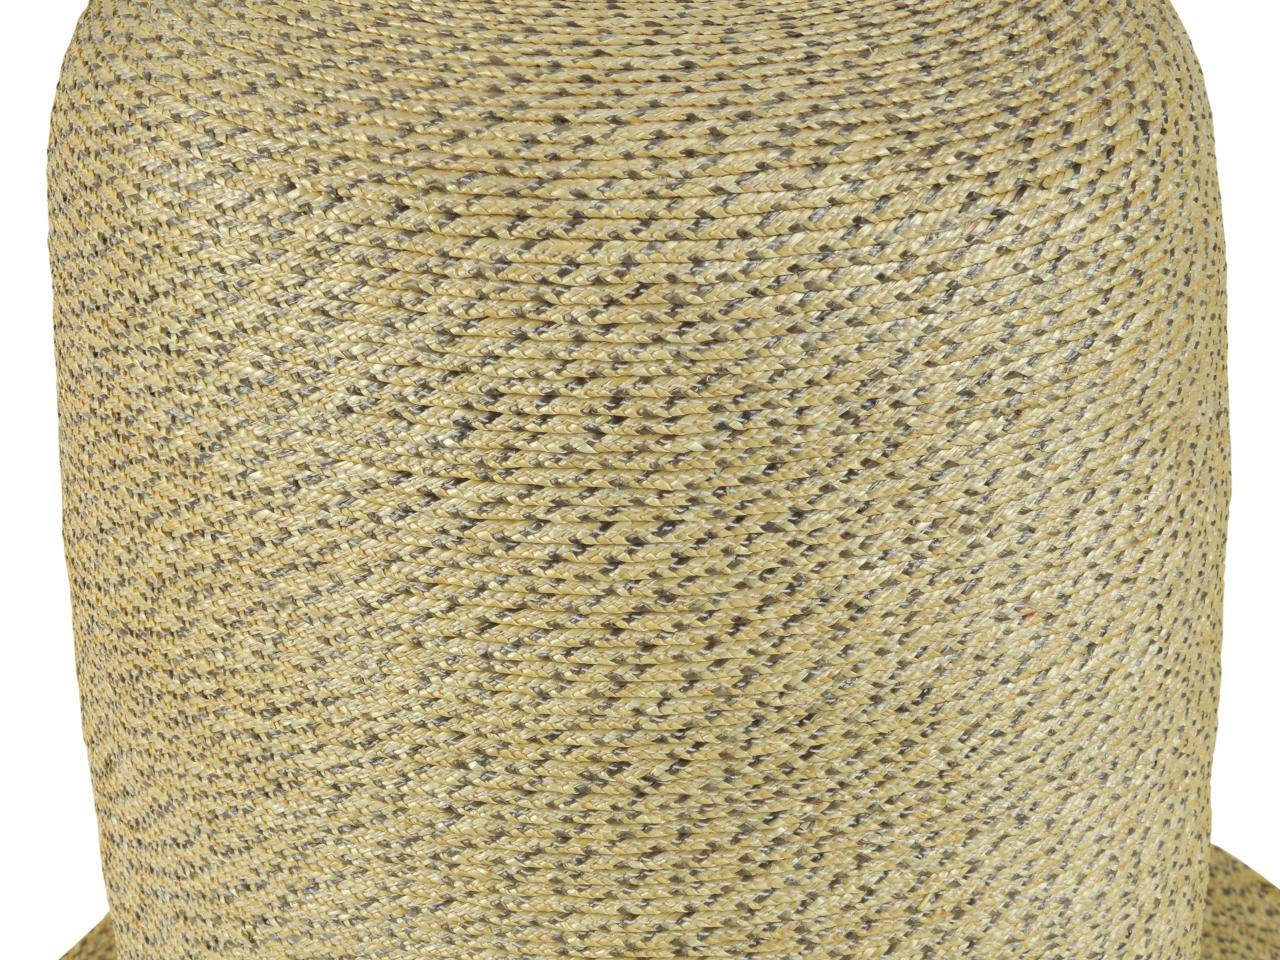 Detalle de la copa de sombrero tipo Rugendas, tejido en paja teatina natural y teñida